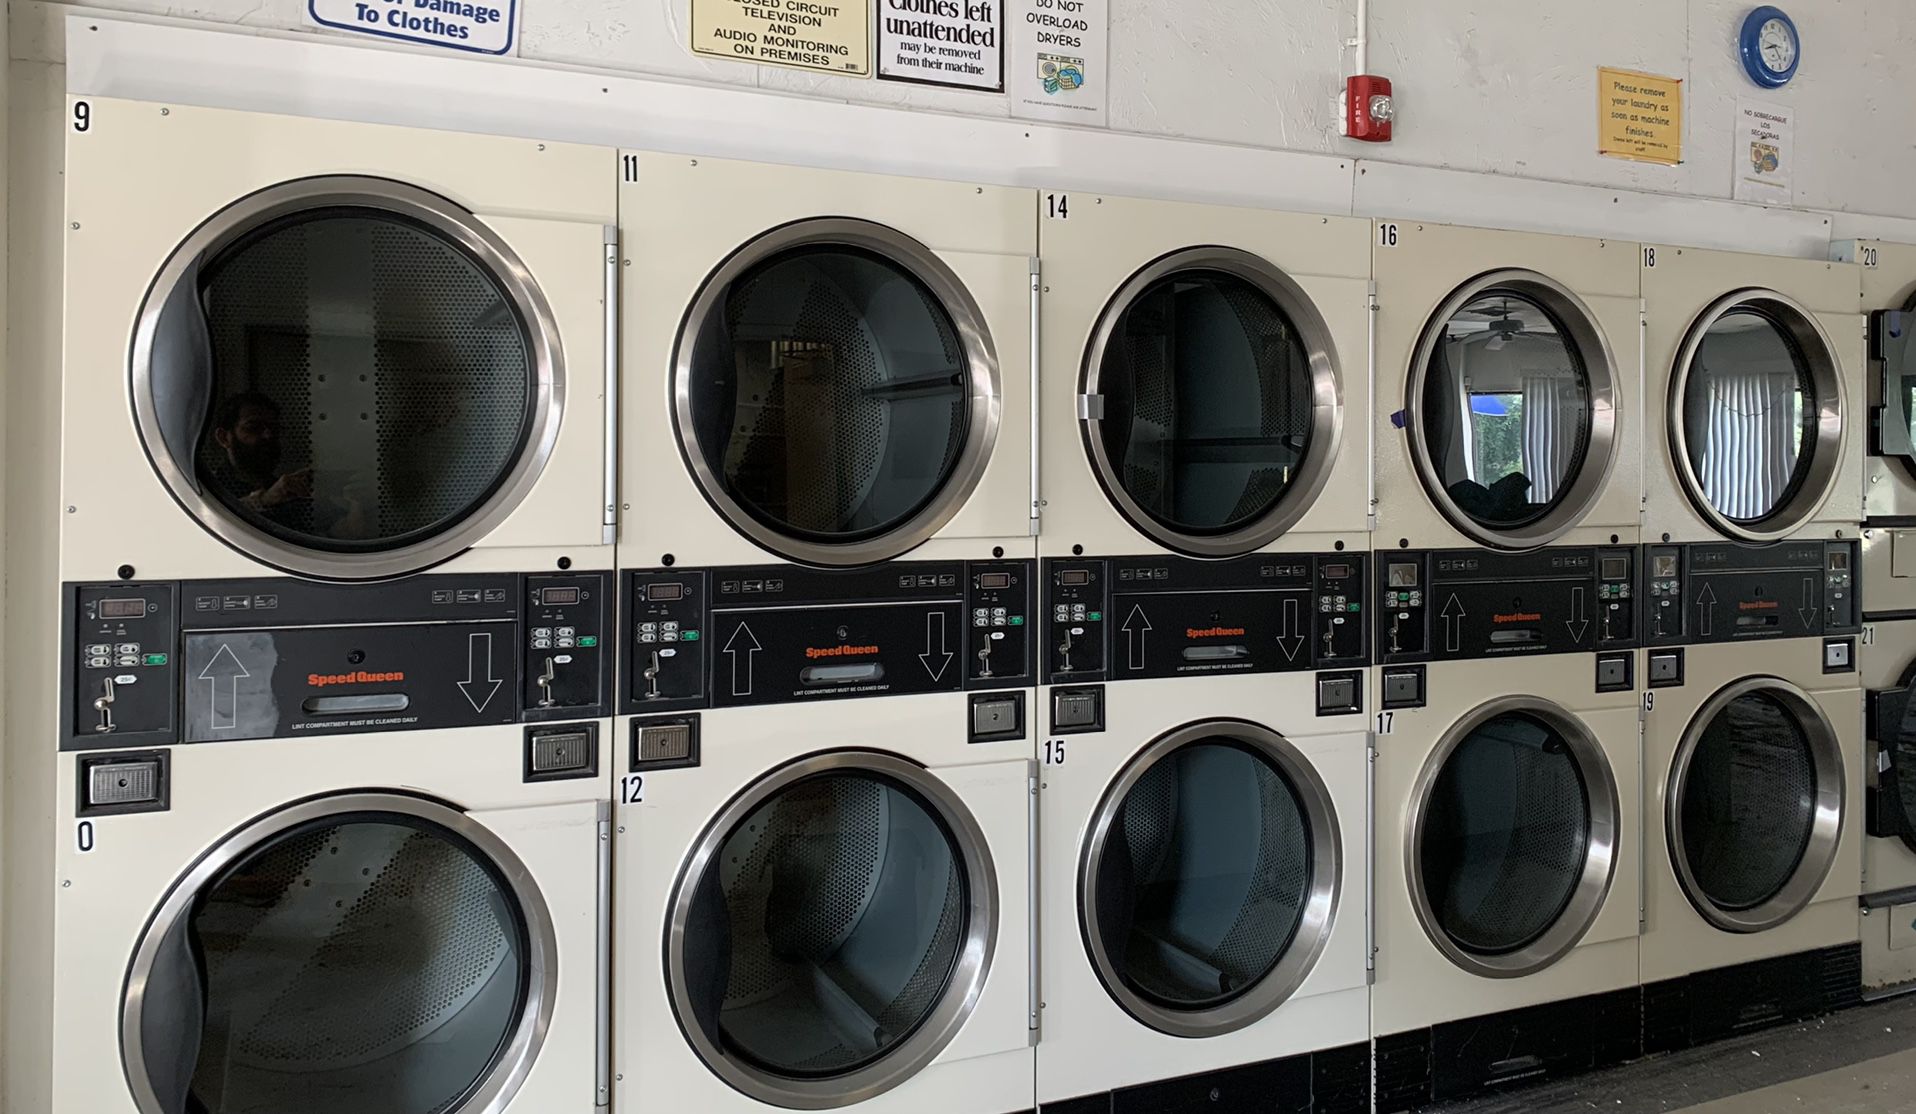 22 Commercial Laundromet Dryers